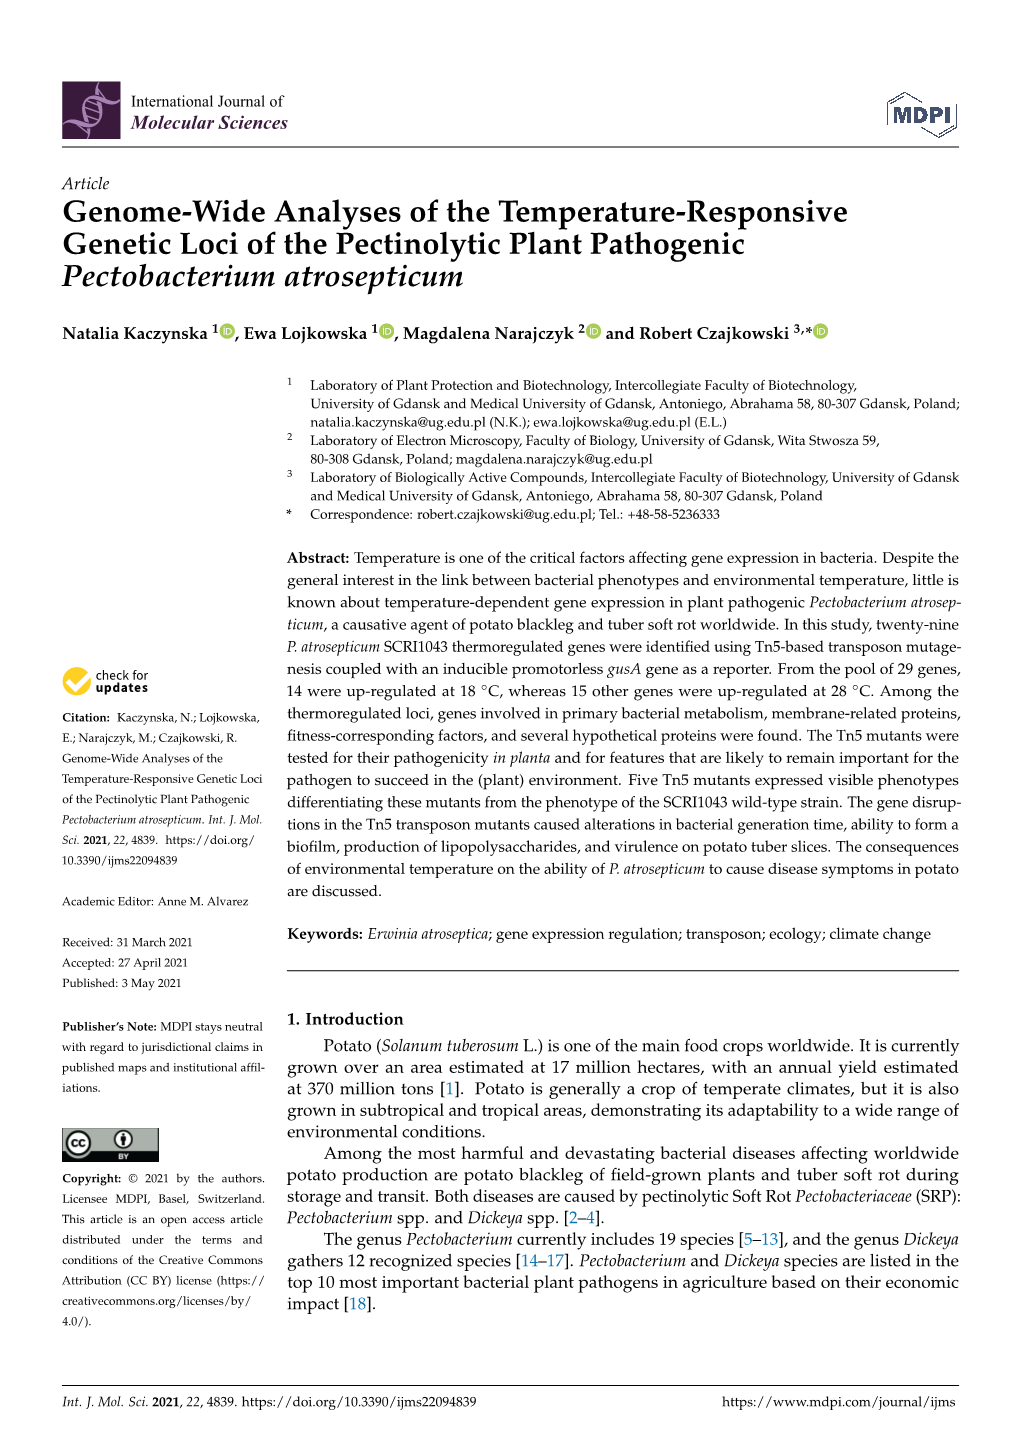 Genome-Wide Analyses of the Temperature-Responsive Genetic Loci of the Pectinolytic Plant Pathogenic Pectobacterium Atrosepticum